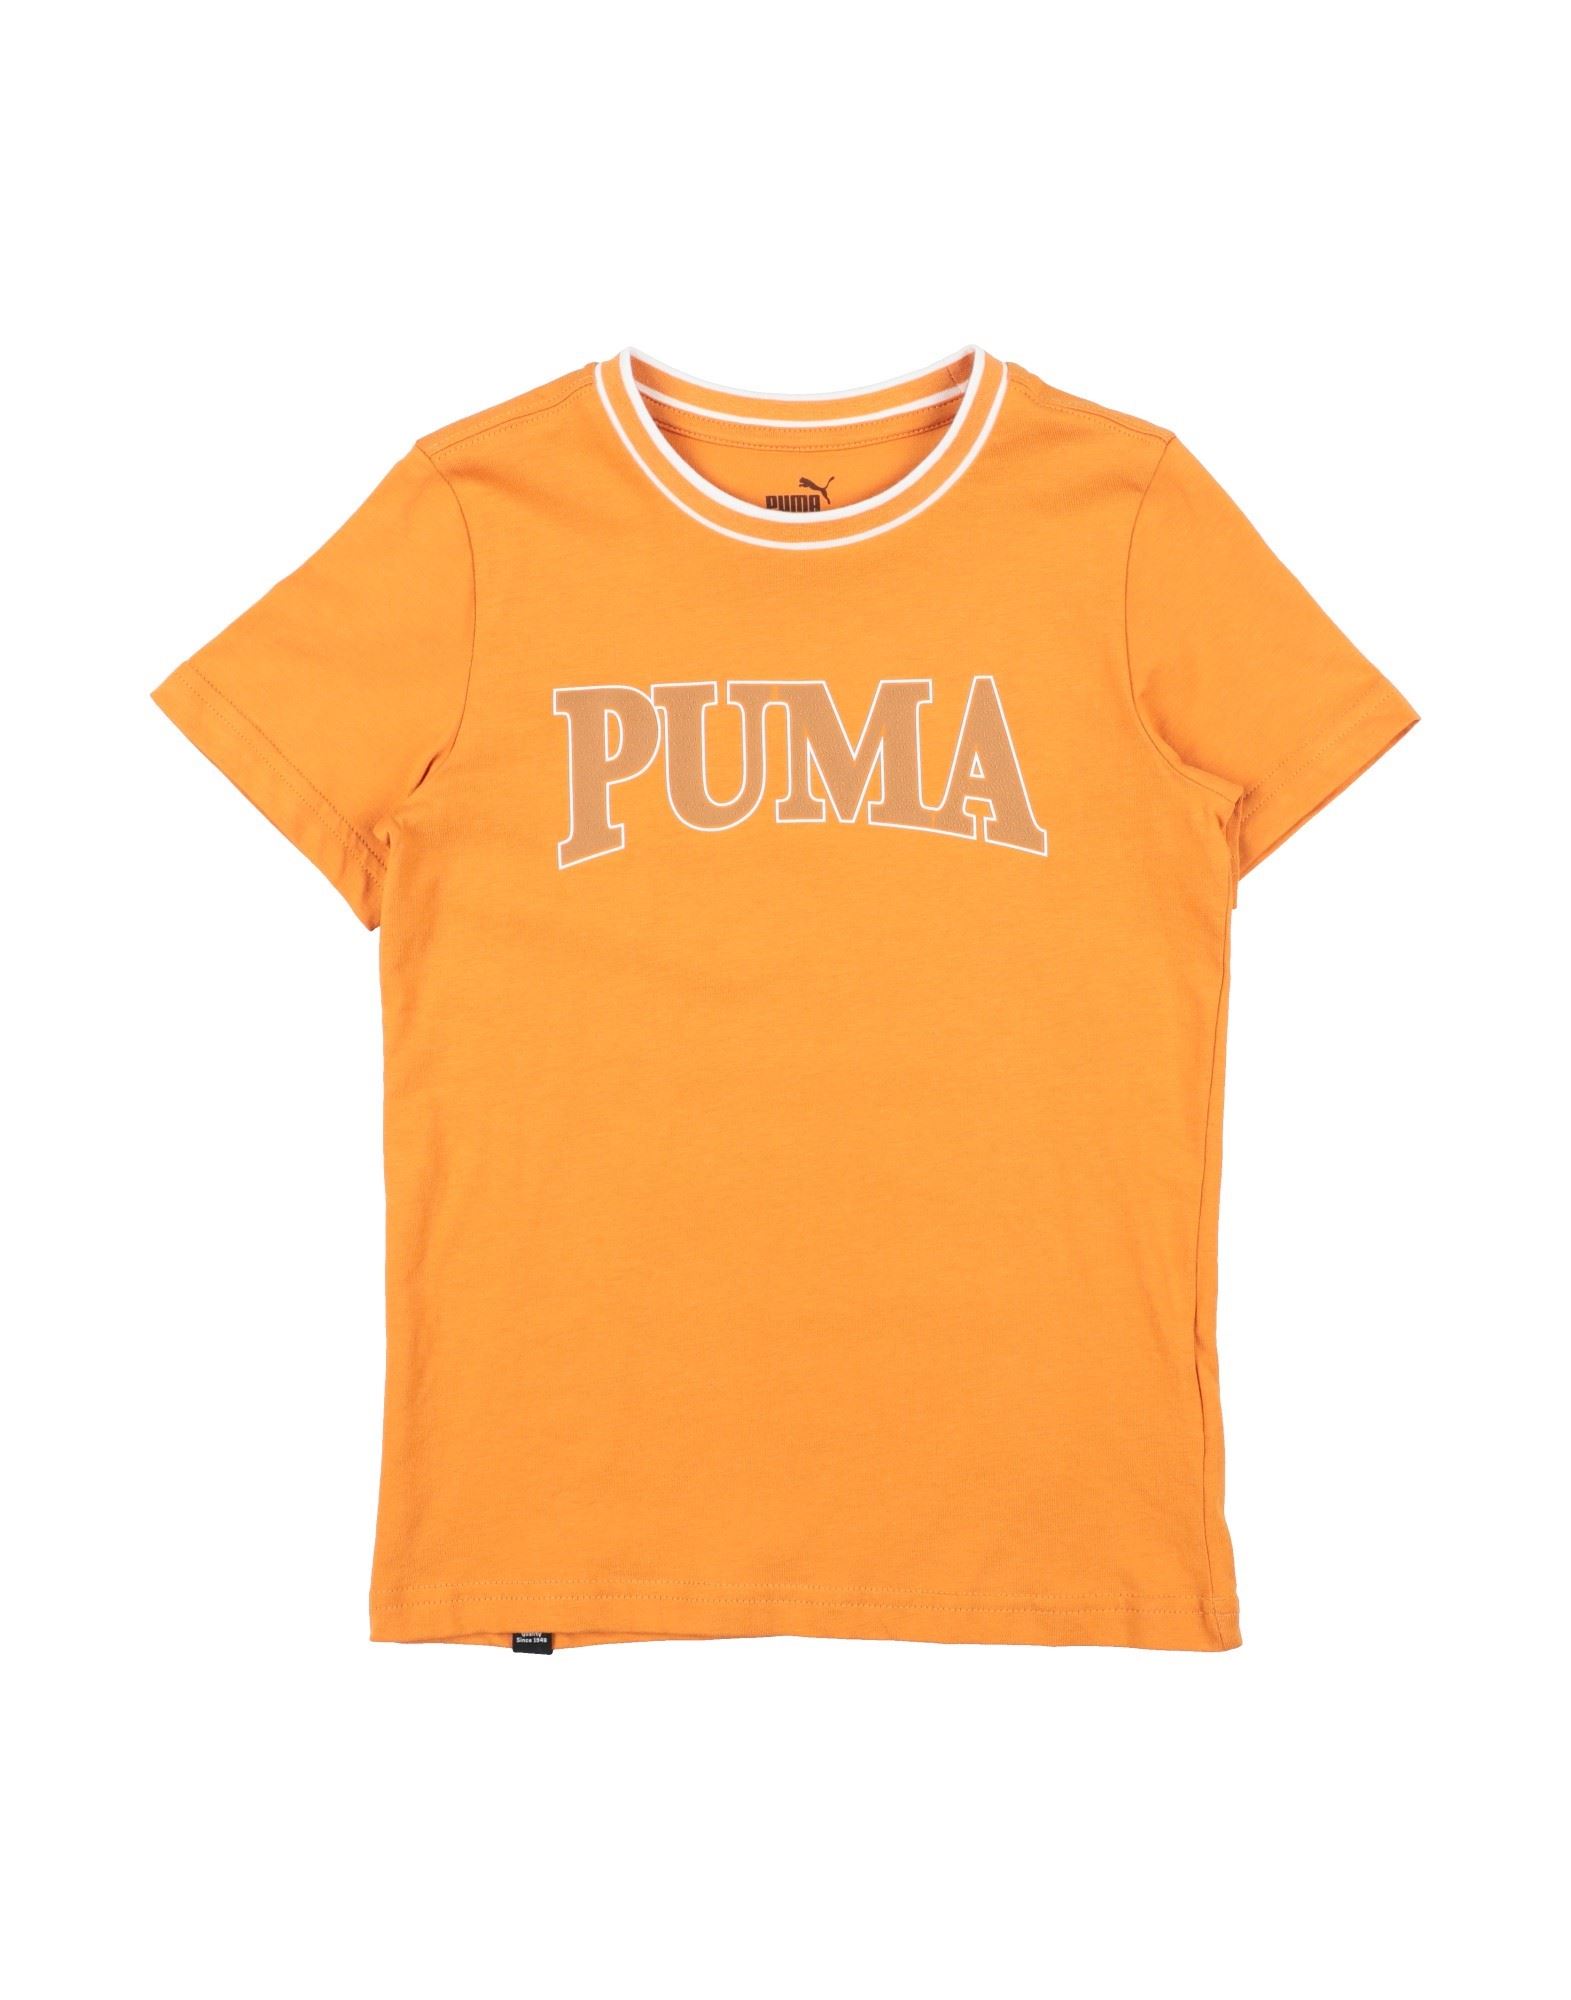 PUMA T-shirts Kinder Mandarine von PUMA